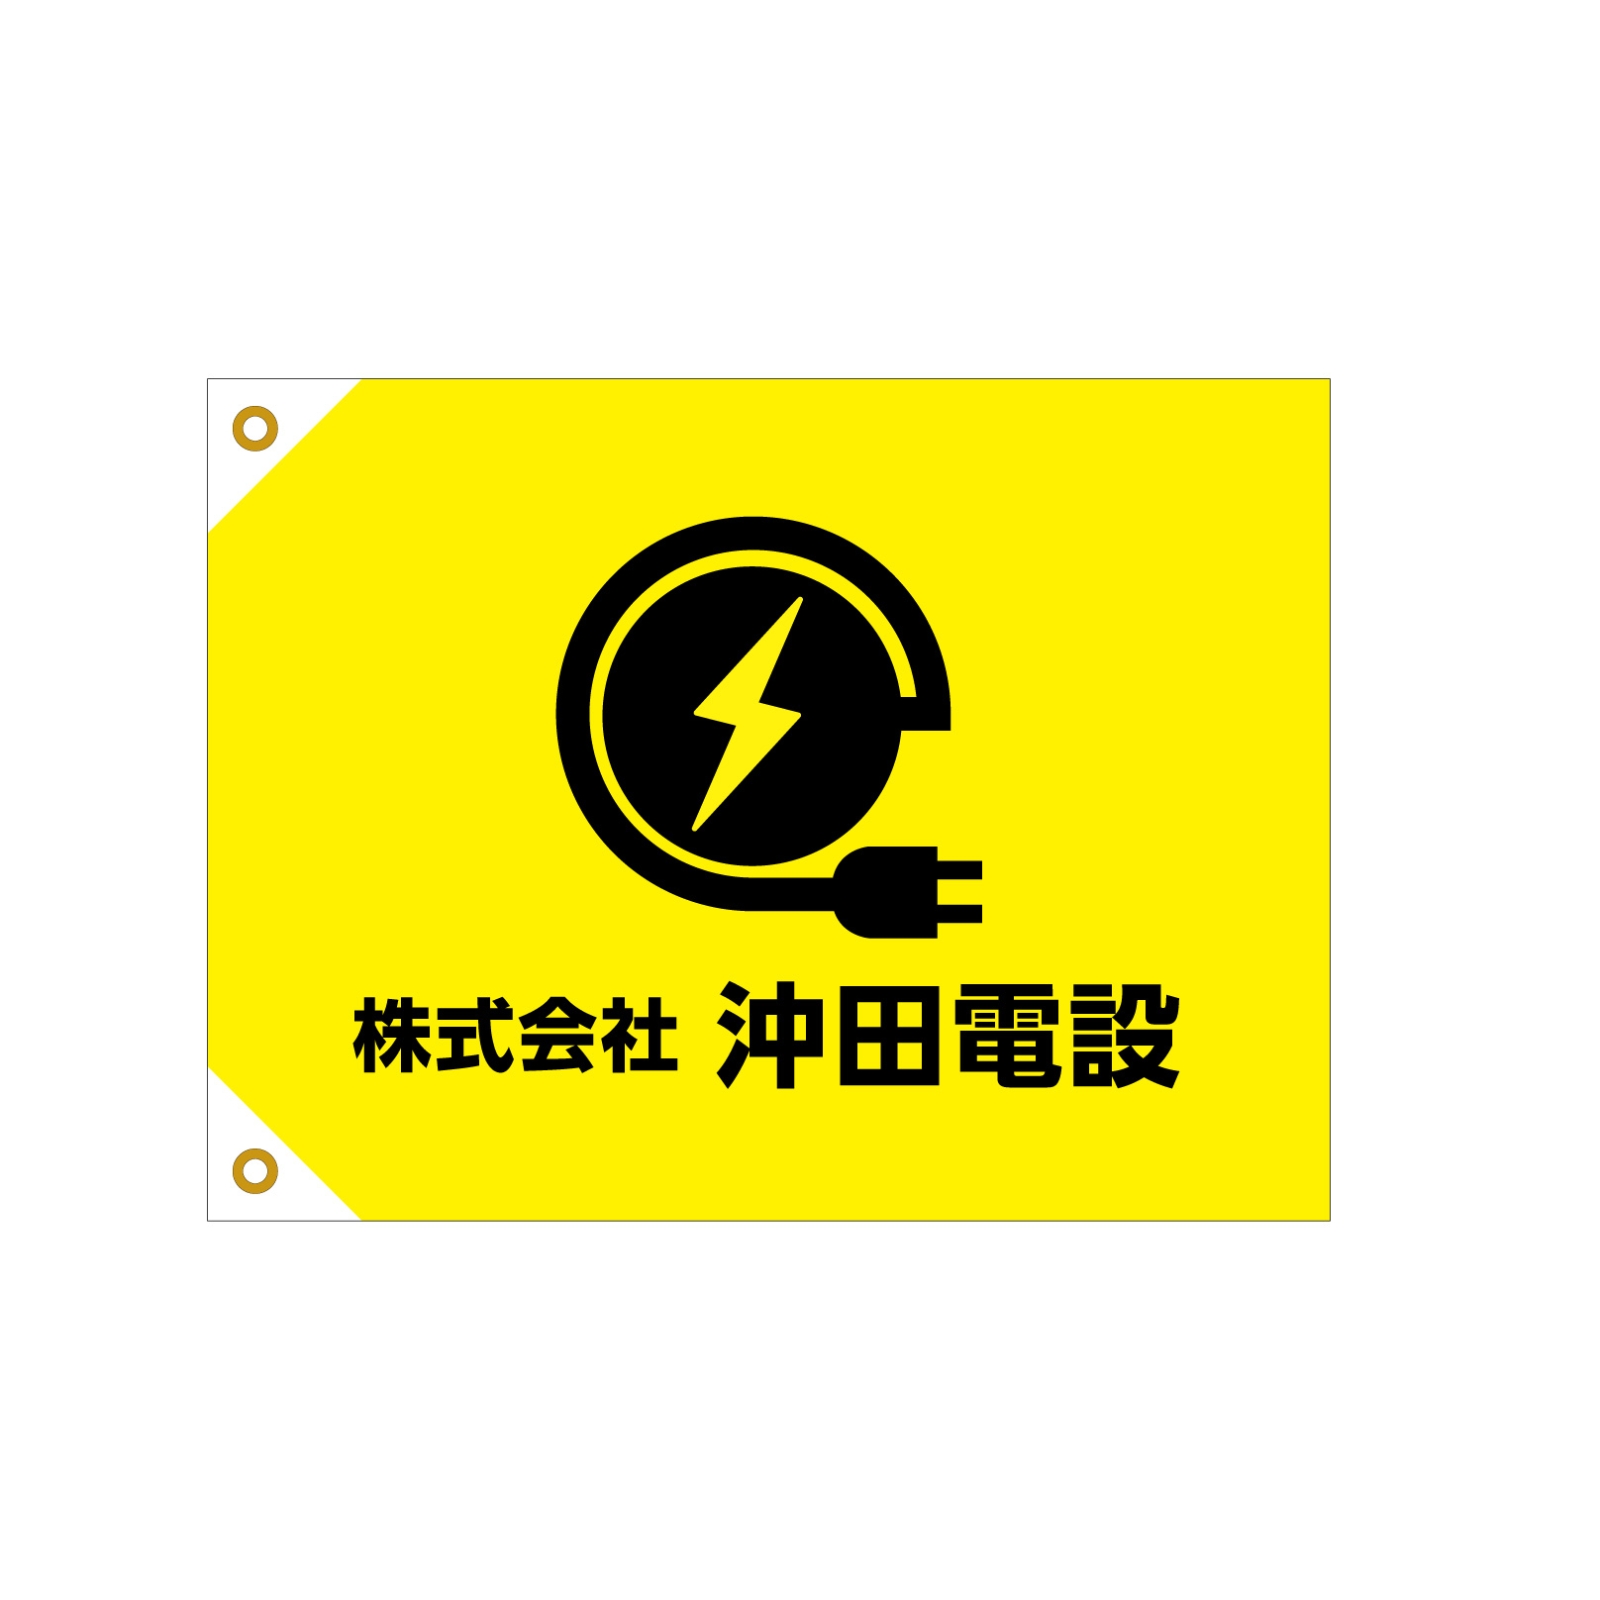 電気設備会社の旗